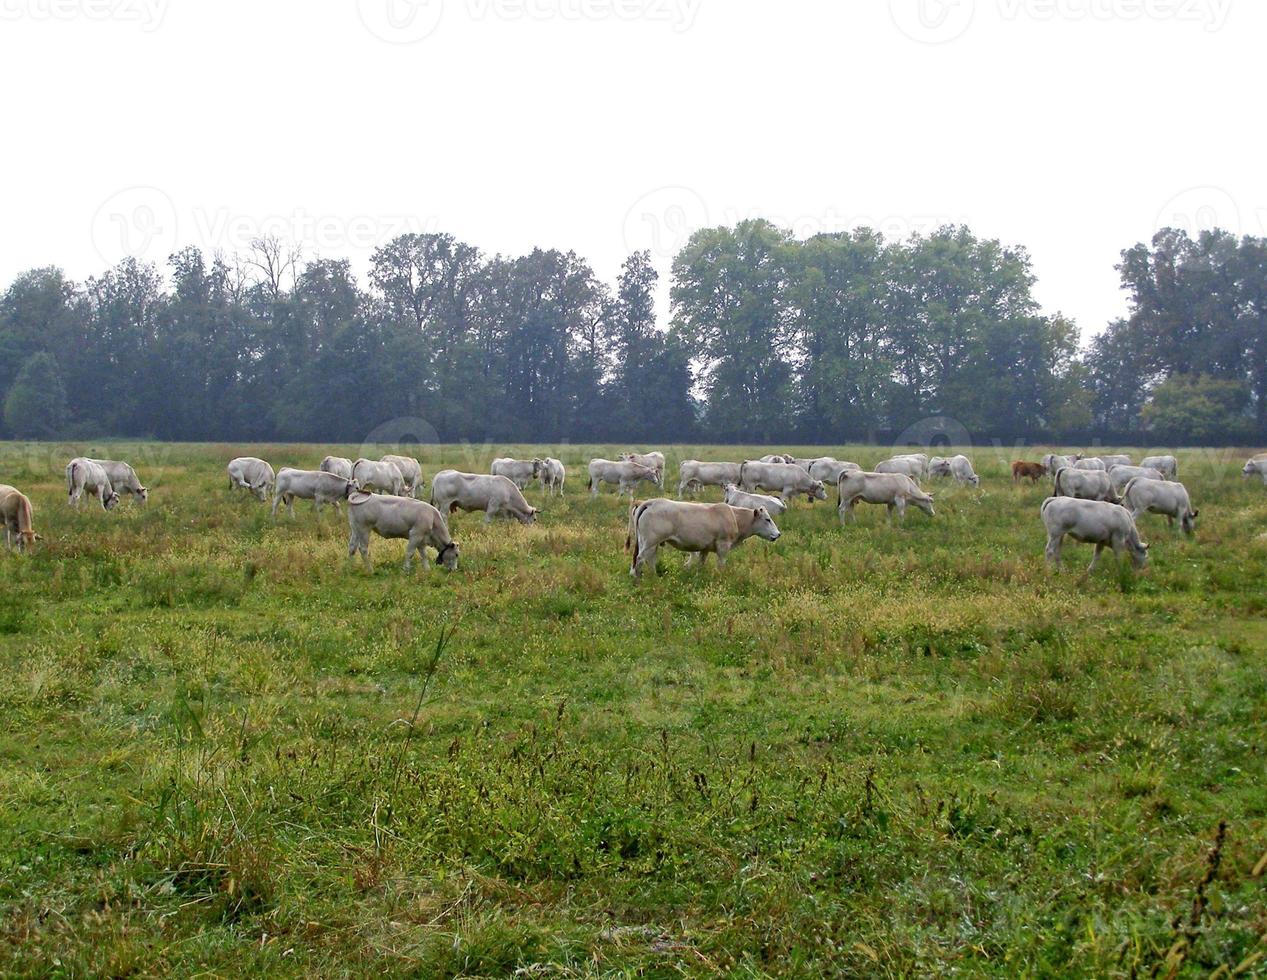 vacas en un prado foto